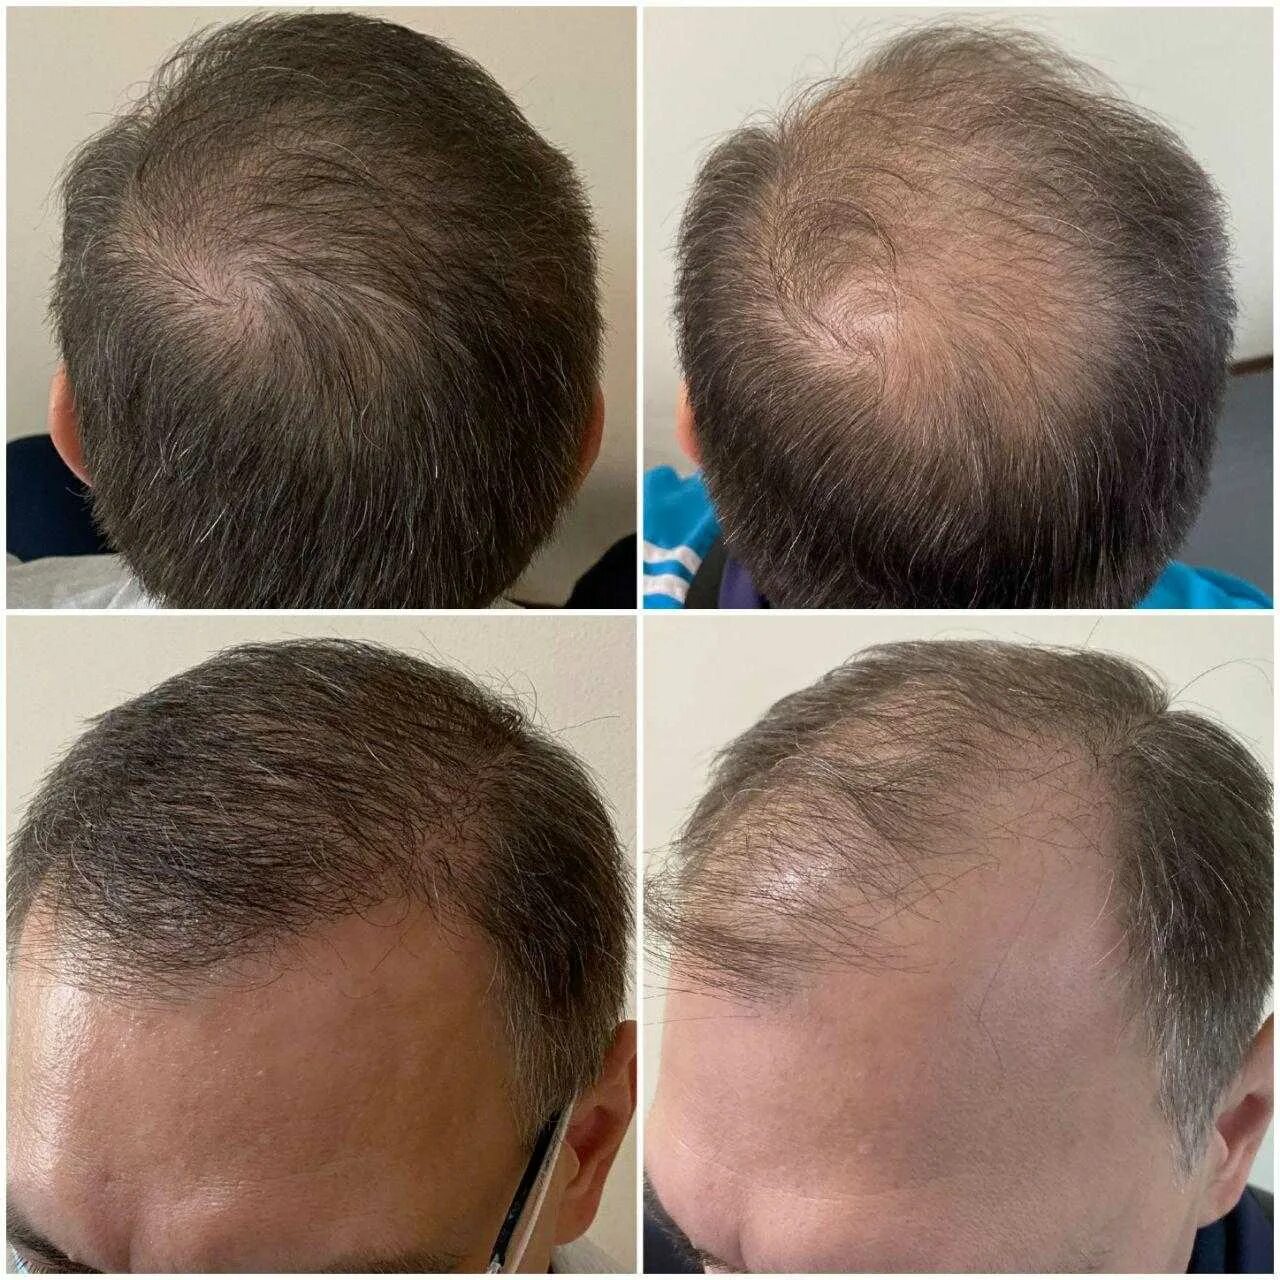 Графт трансплантация волос. Пересадка волос до и после. Трансплантация волос методом fue.